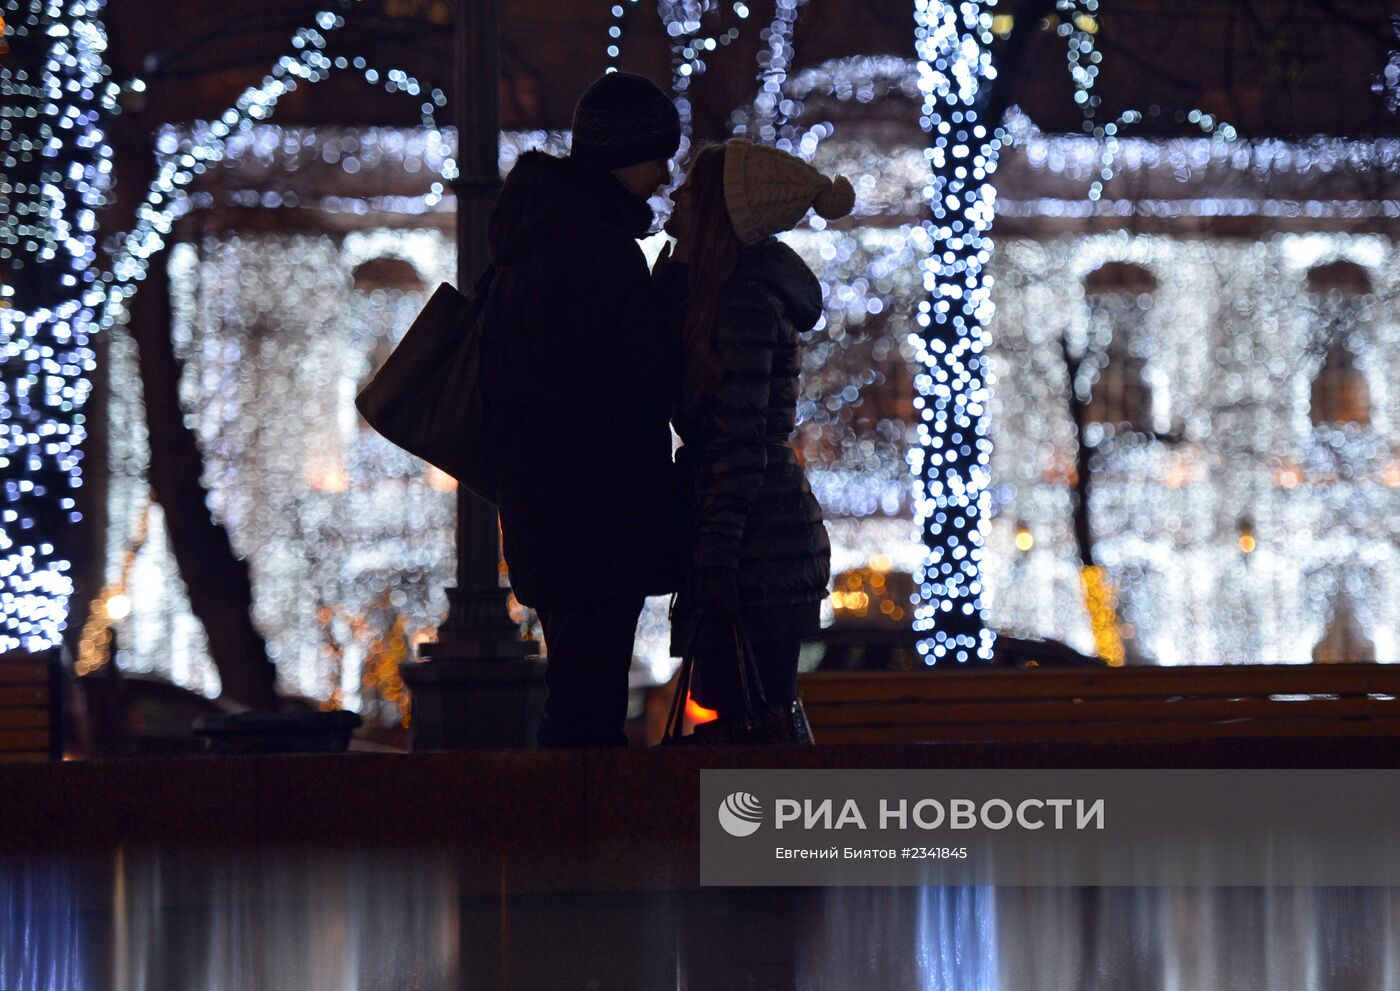 Новогоднее убранство Москвы